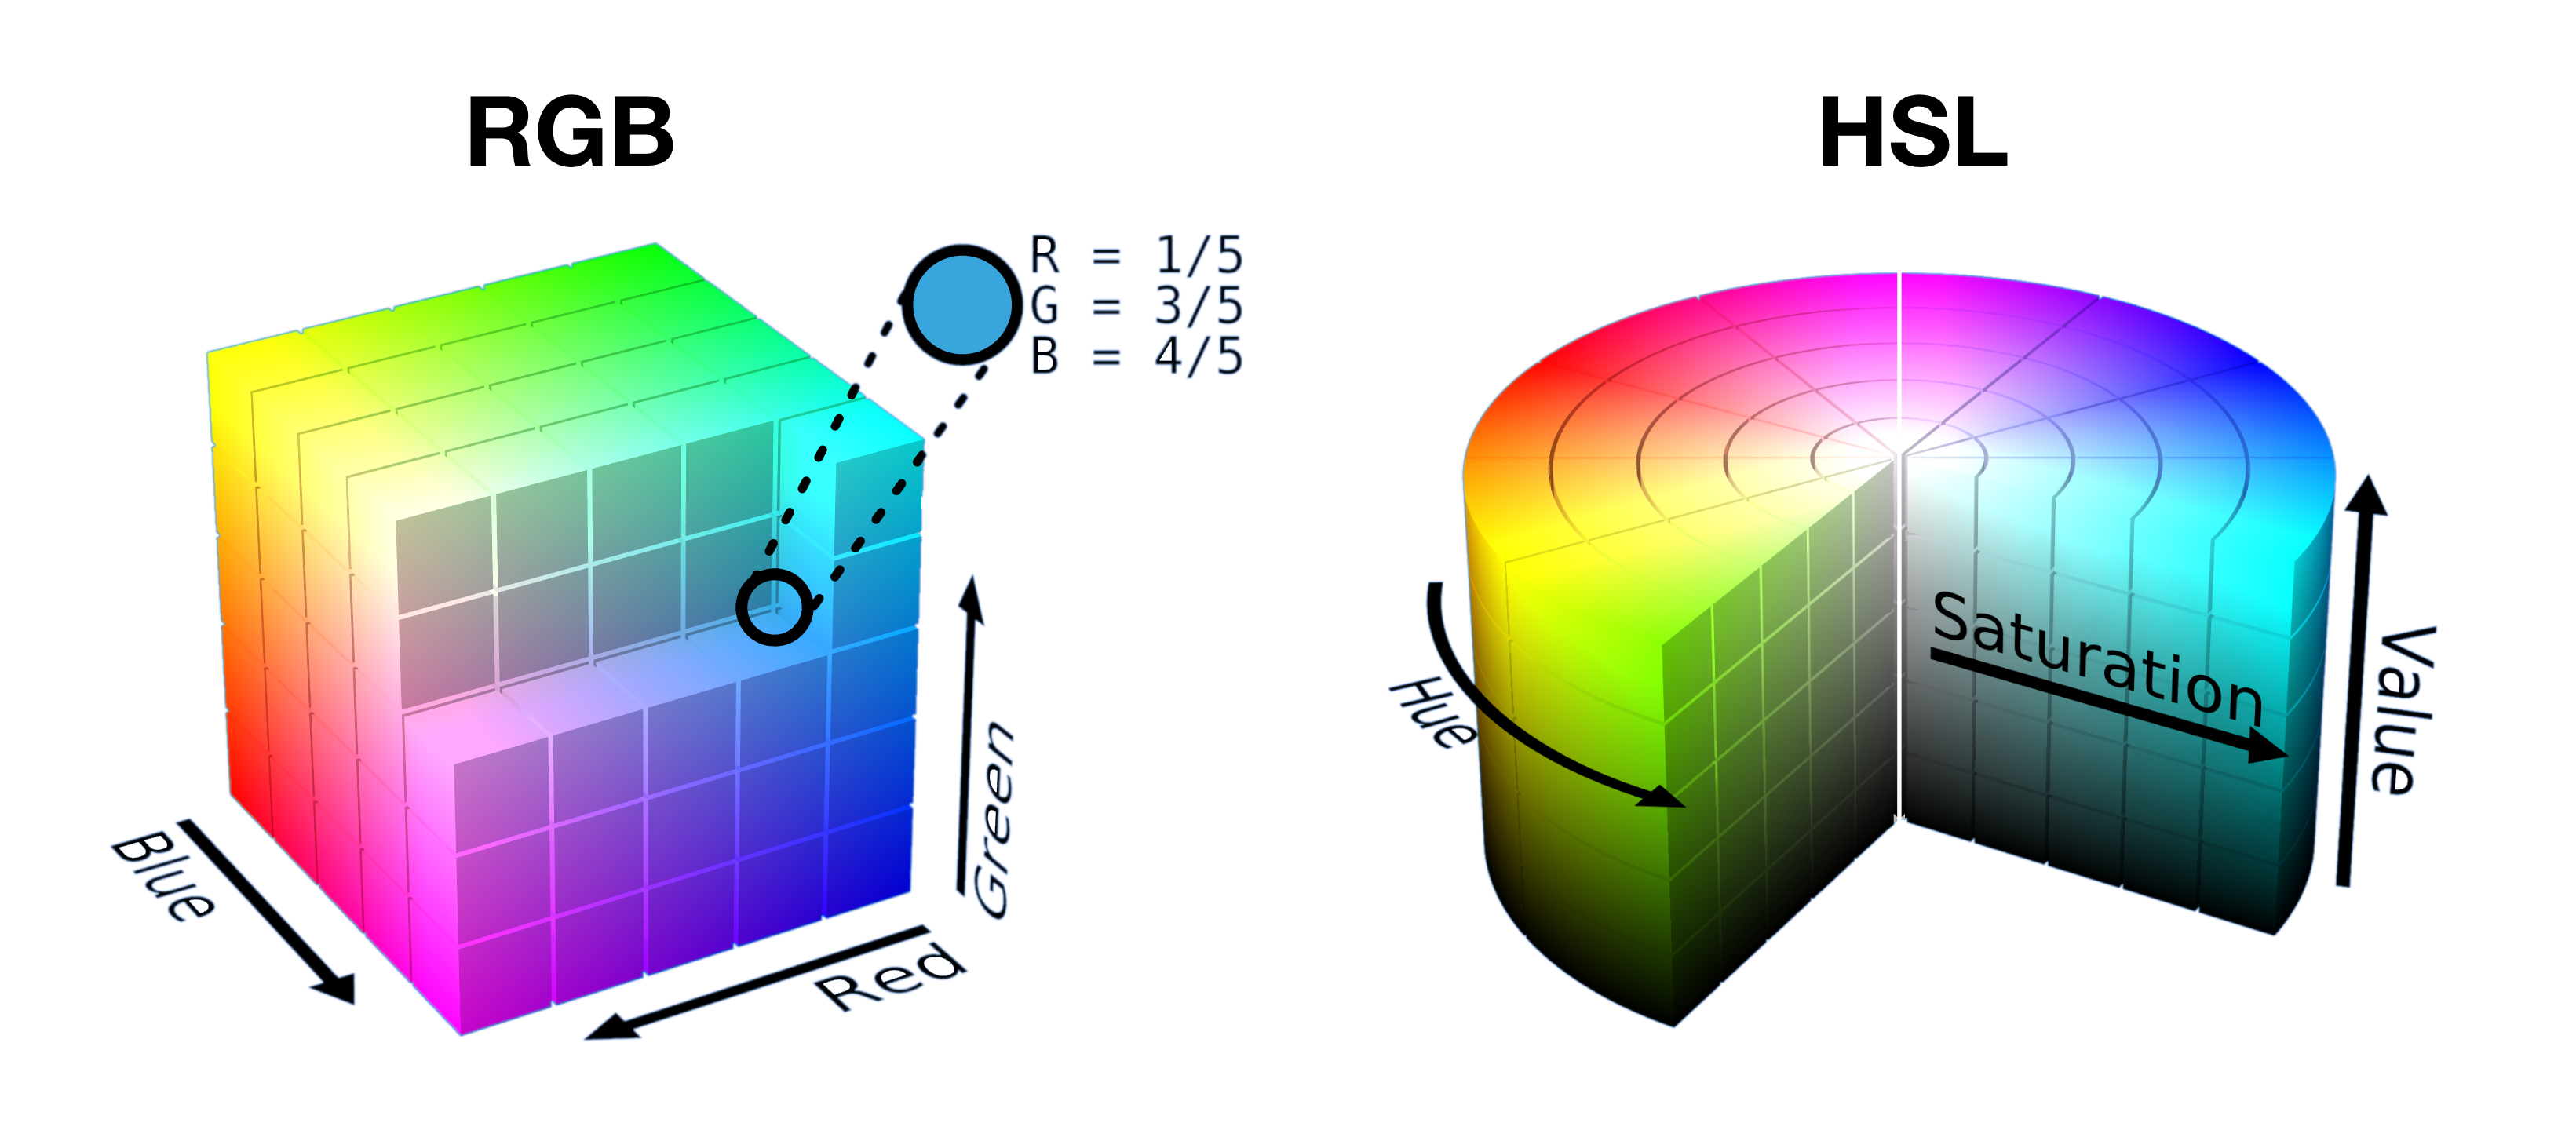 ลูกบาศก์ RGB ที่เปิดอยู่ครึ่งและตัดลงในกระบอก HSL จะแสดงคู่กัน เพื่อแสดงให้เห็นว่าสีต่างๆ ถูกบรรจุเป็นรูปทรงต่างๆ ในแต่ละช่องว่างอย่างไร